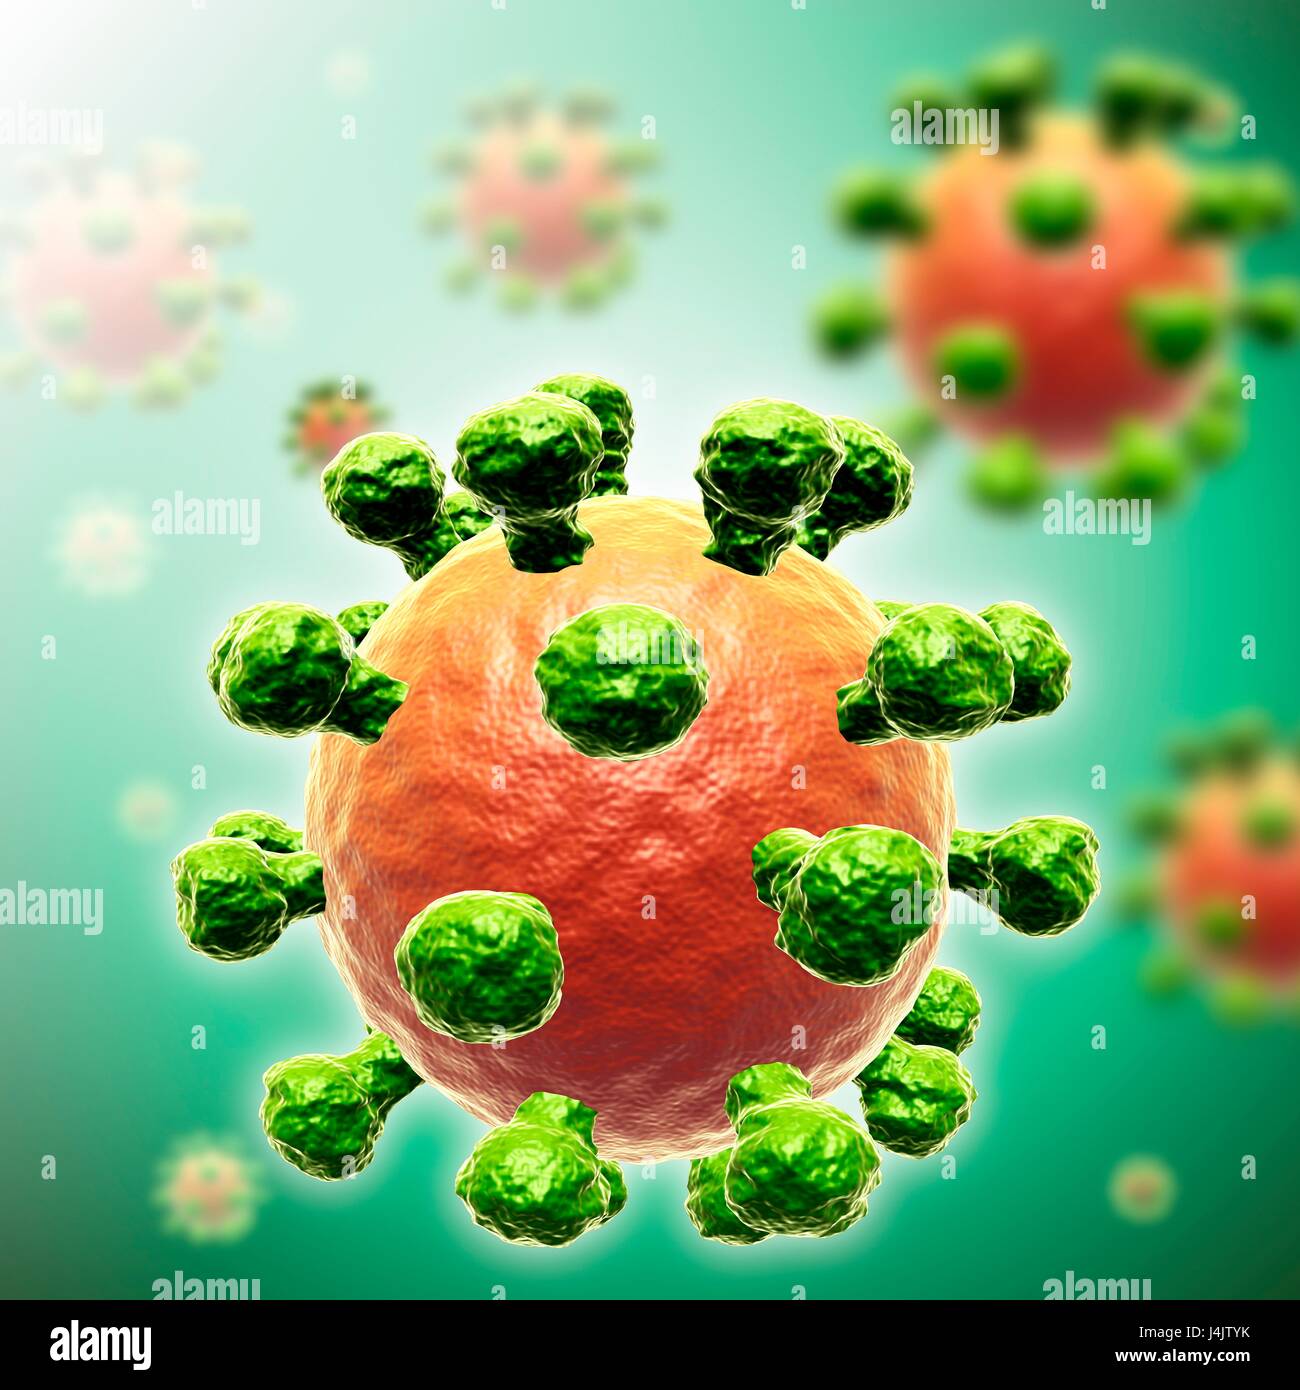 Illustration of a rhinovirus virus particle. Stock Photo